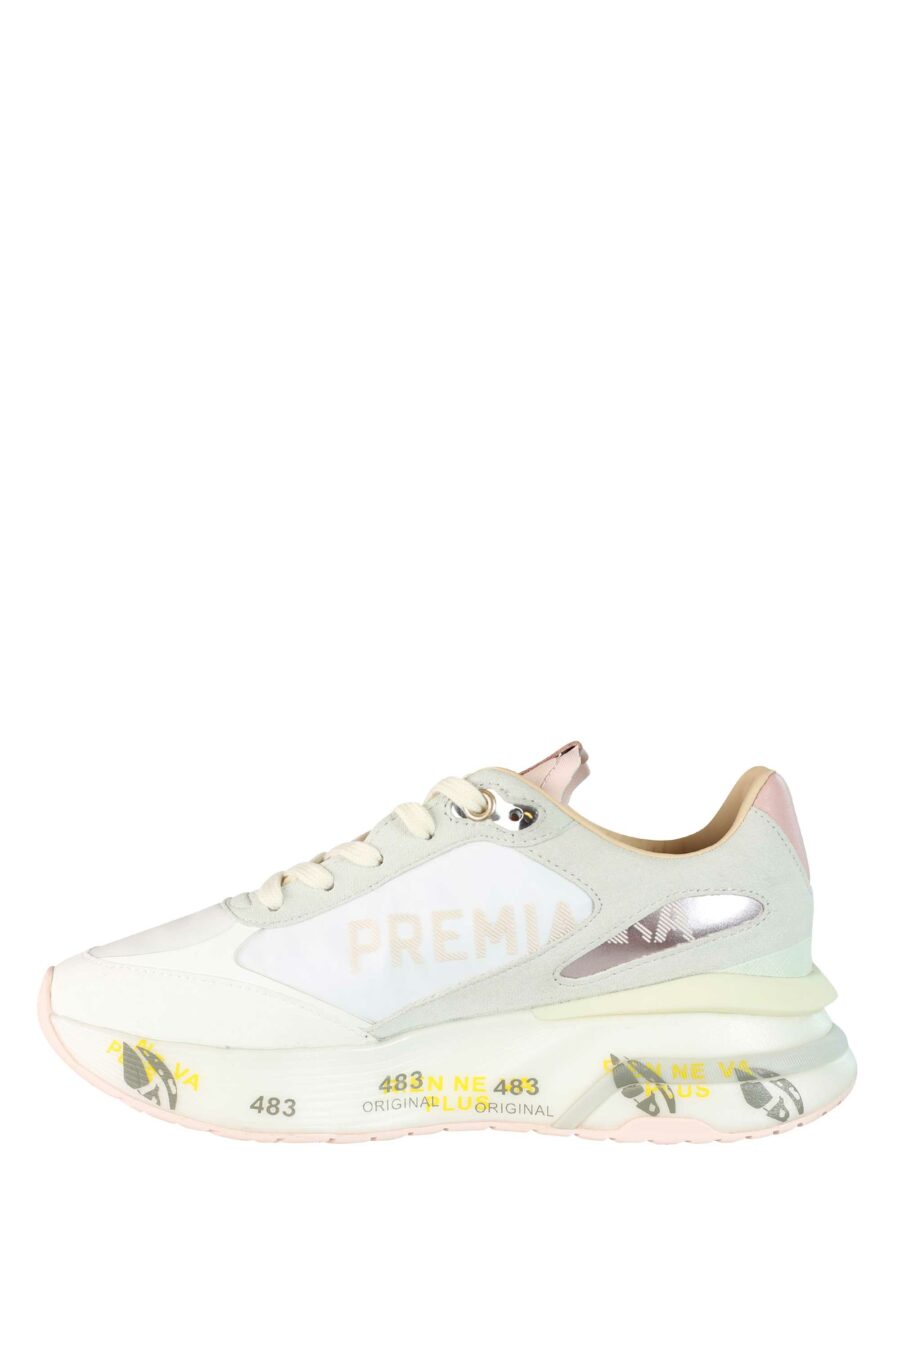 Zapatillas blancas con rosa y gris "moe run-d 6338" - 8058326253473 3